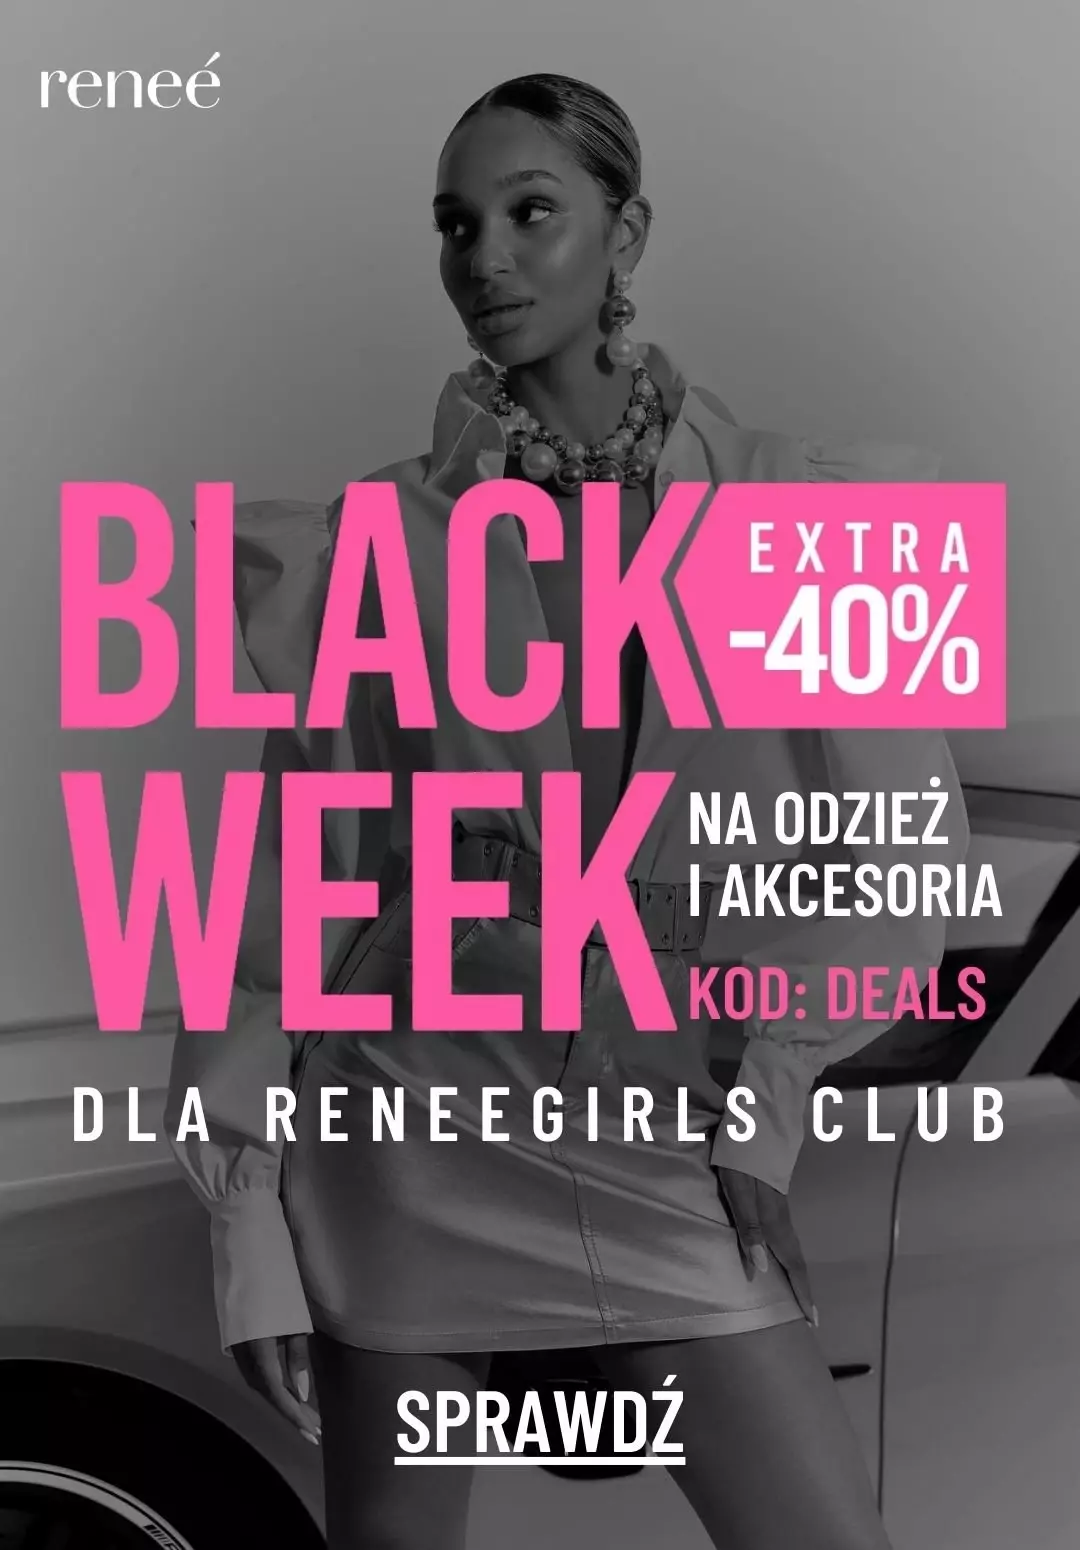 Renee - gazetka promocyjna BLACK WEEK! -40% na ODZIEŻ i AKCESORIA dla klubowiczów od poniedziałku 20.11 do wtorku 21.11